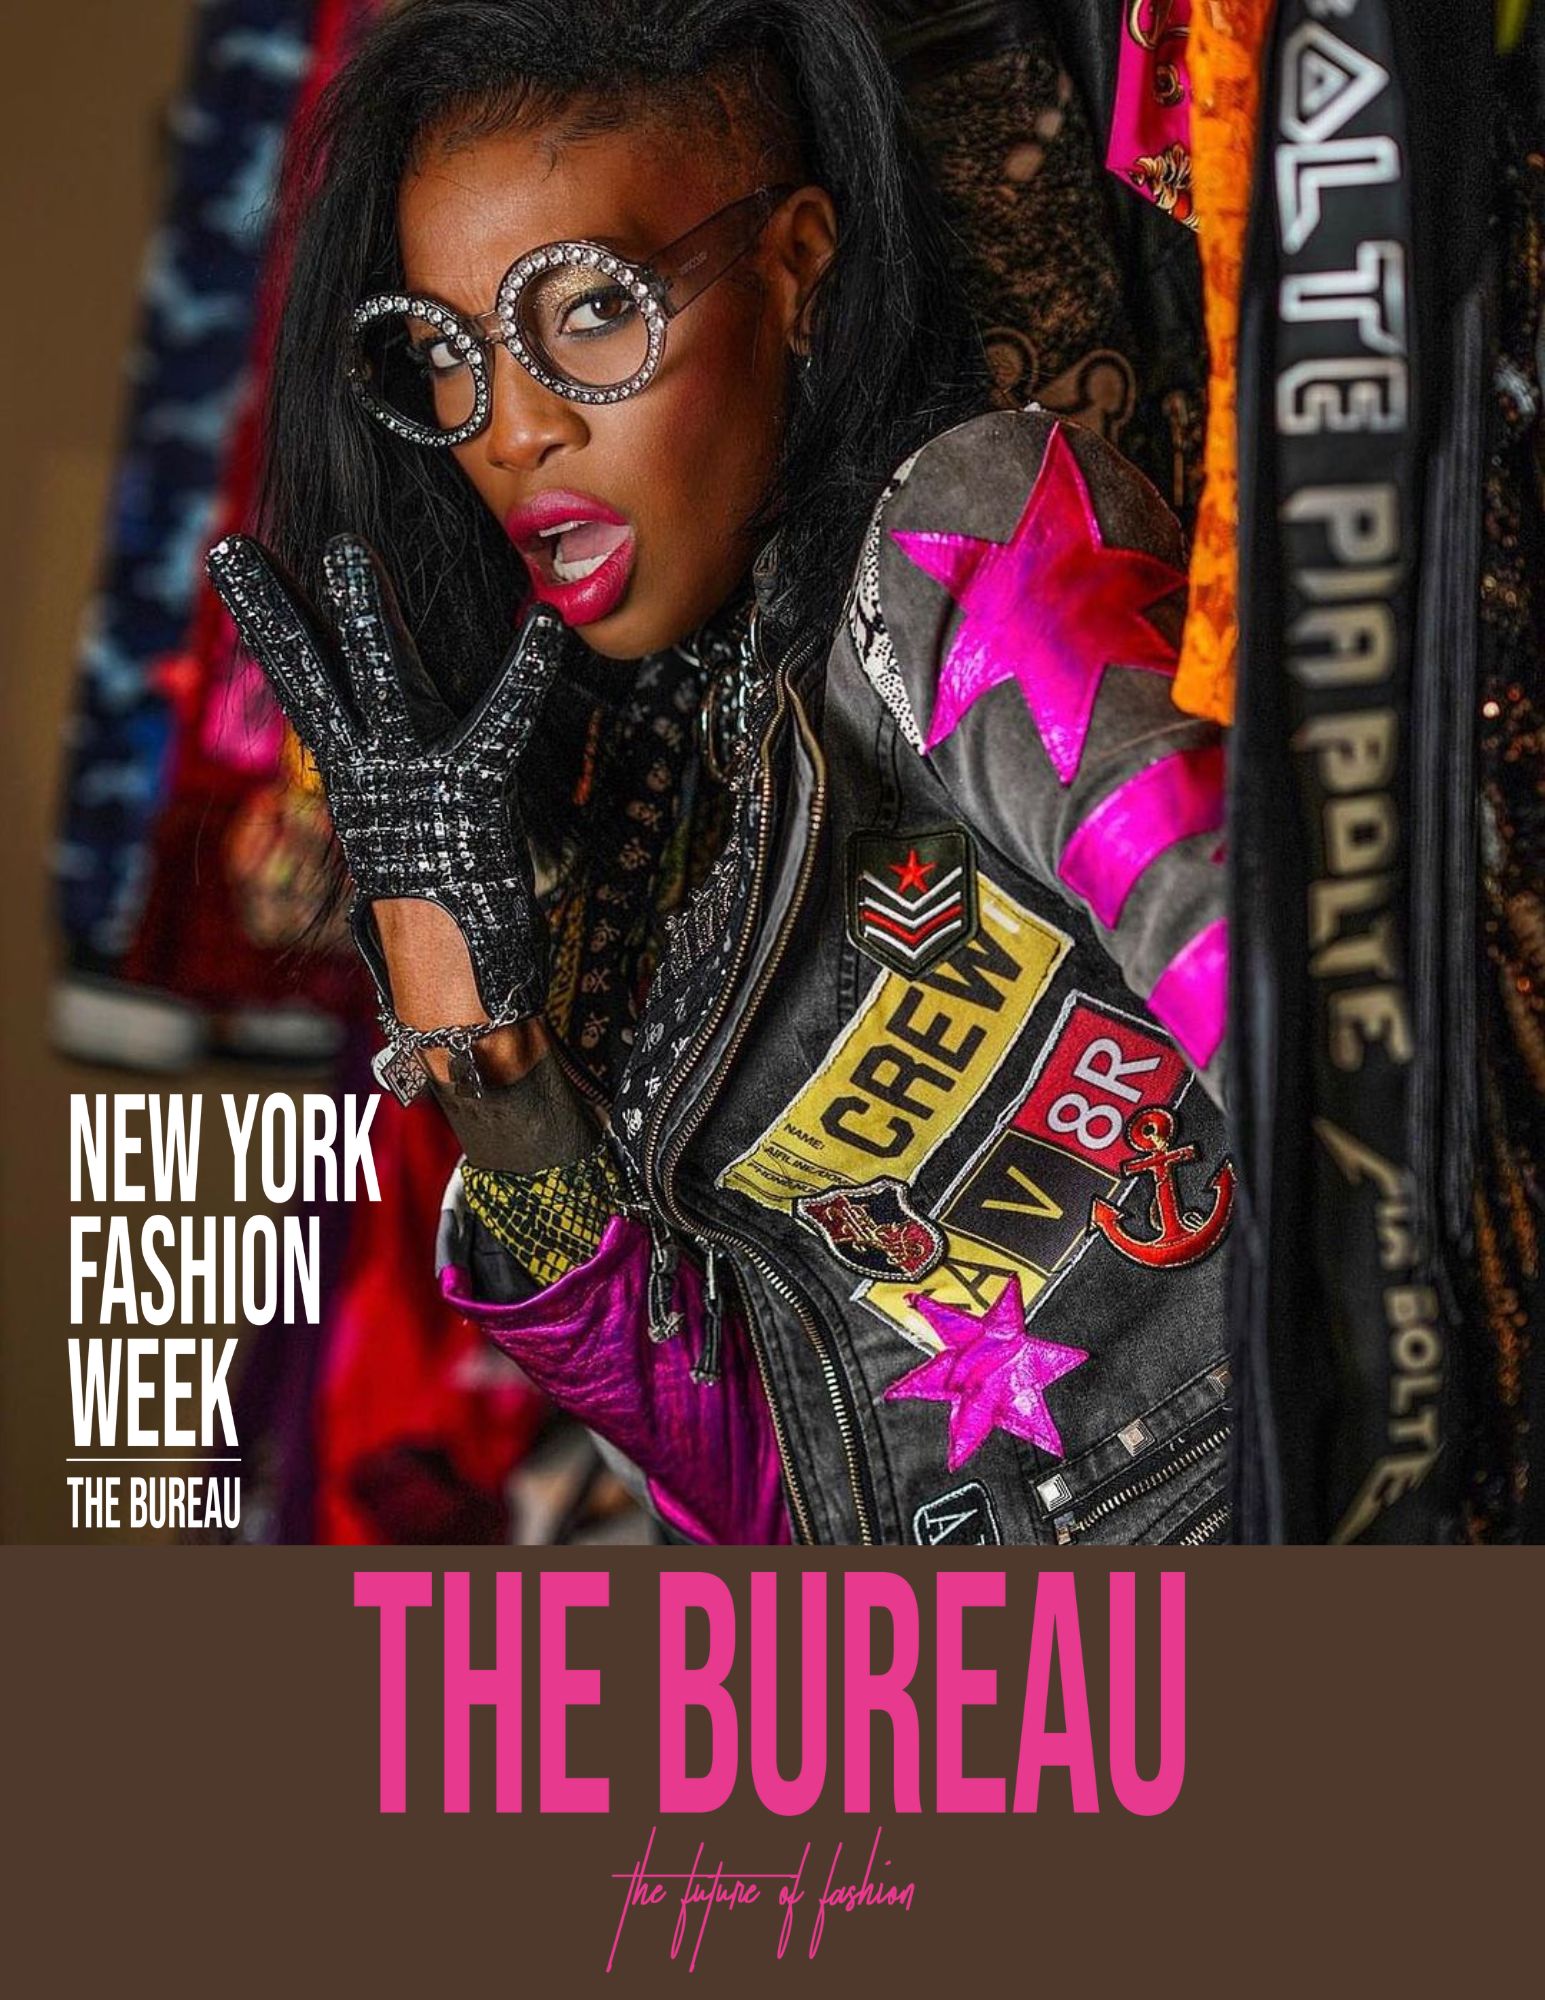 What to wear to Fashion Week? - The Bureau Fashion Week